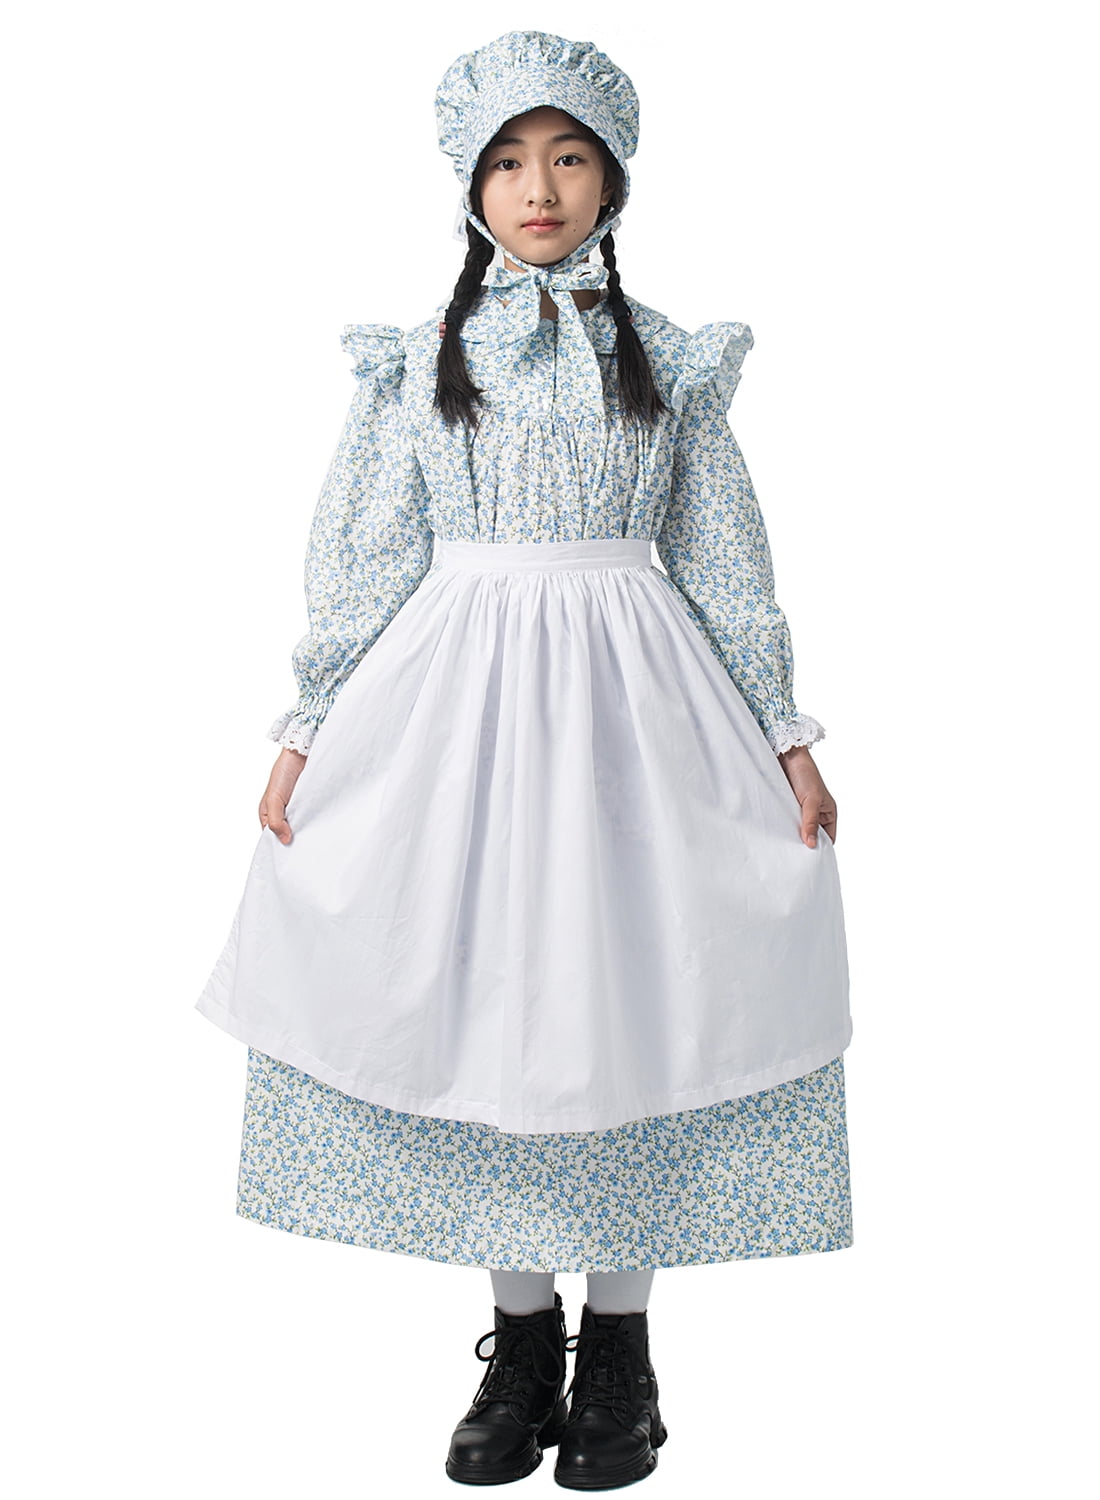 GRACEART Pioneer Girl Costume Colonial Prairie Dress Light Blue